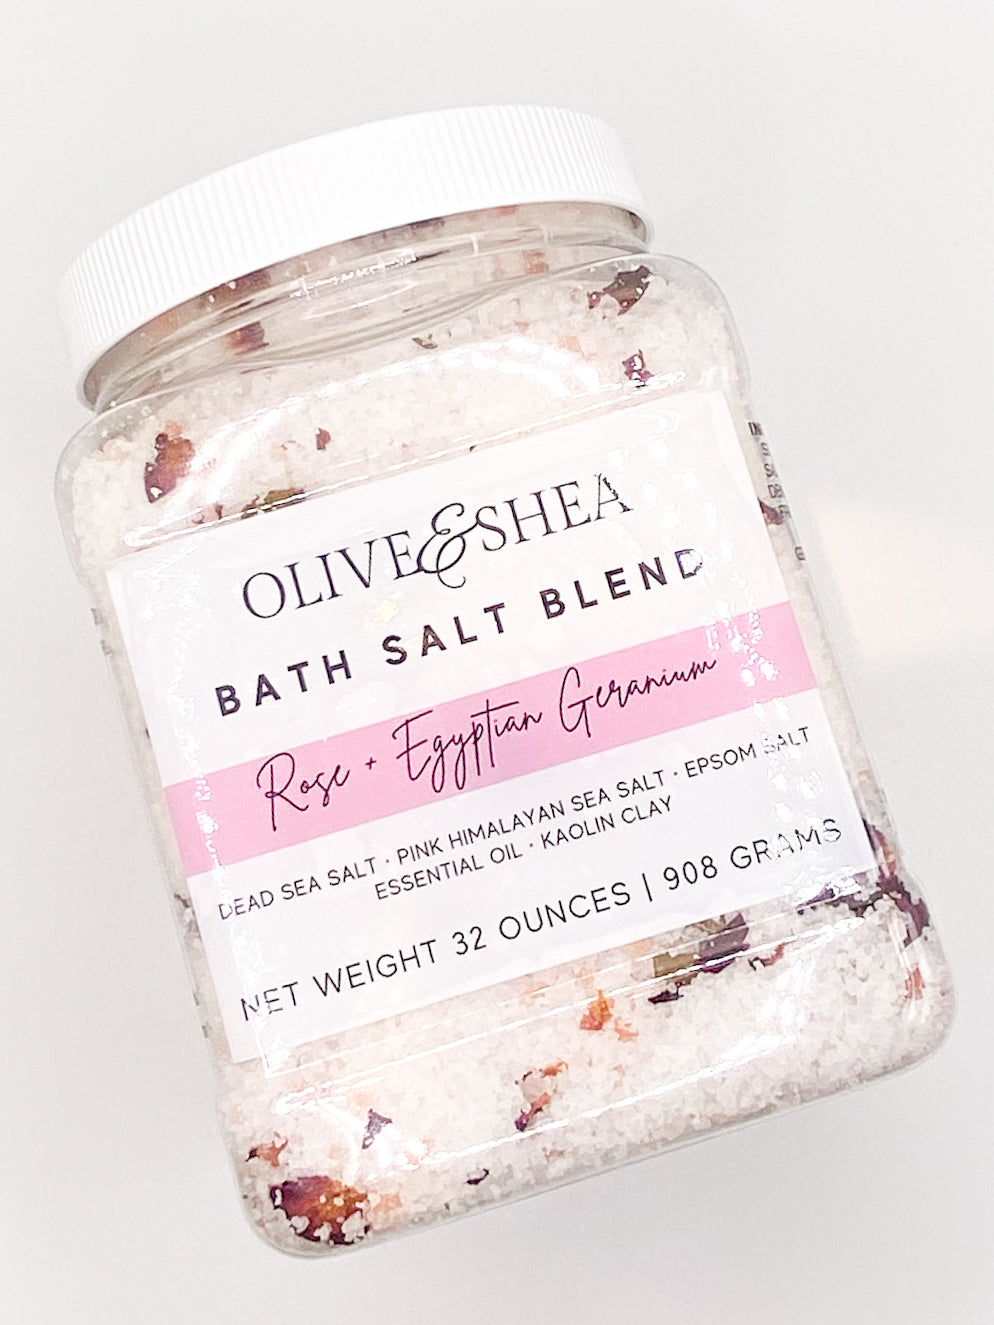 Rose + Egyptian Bath Salt Blend